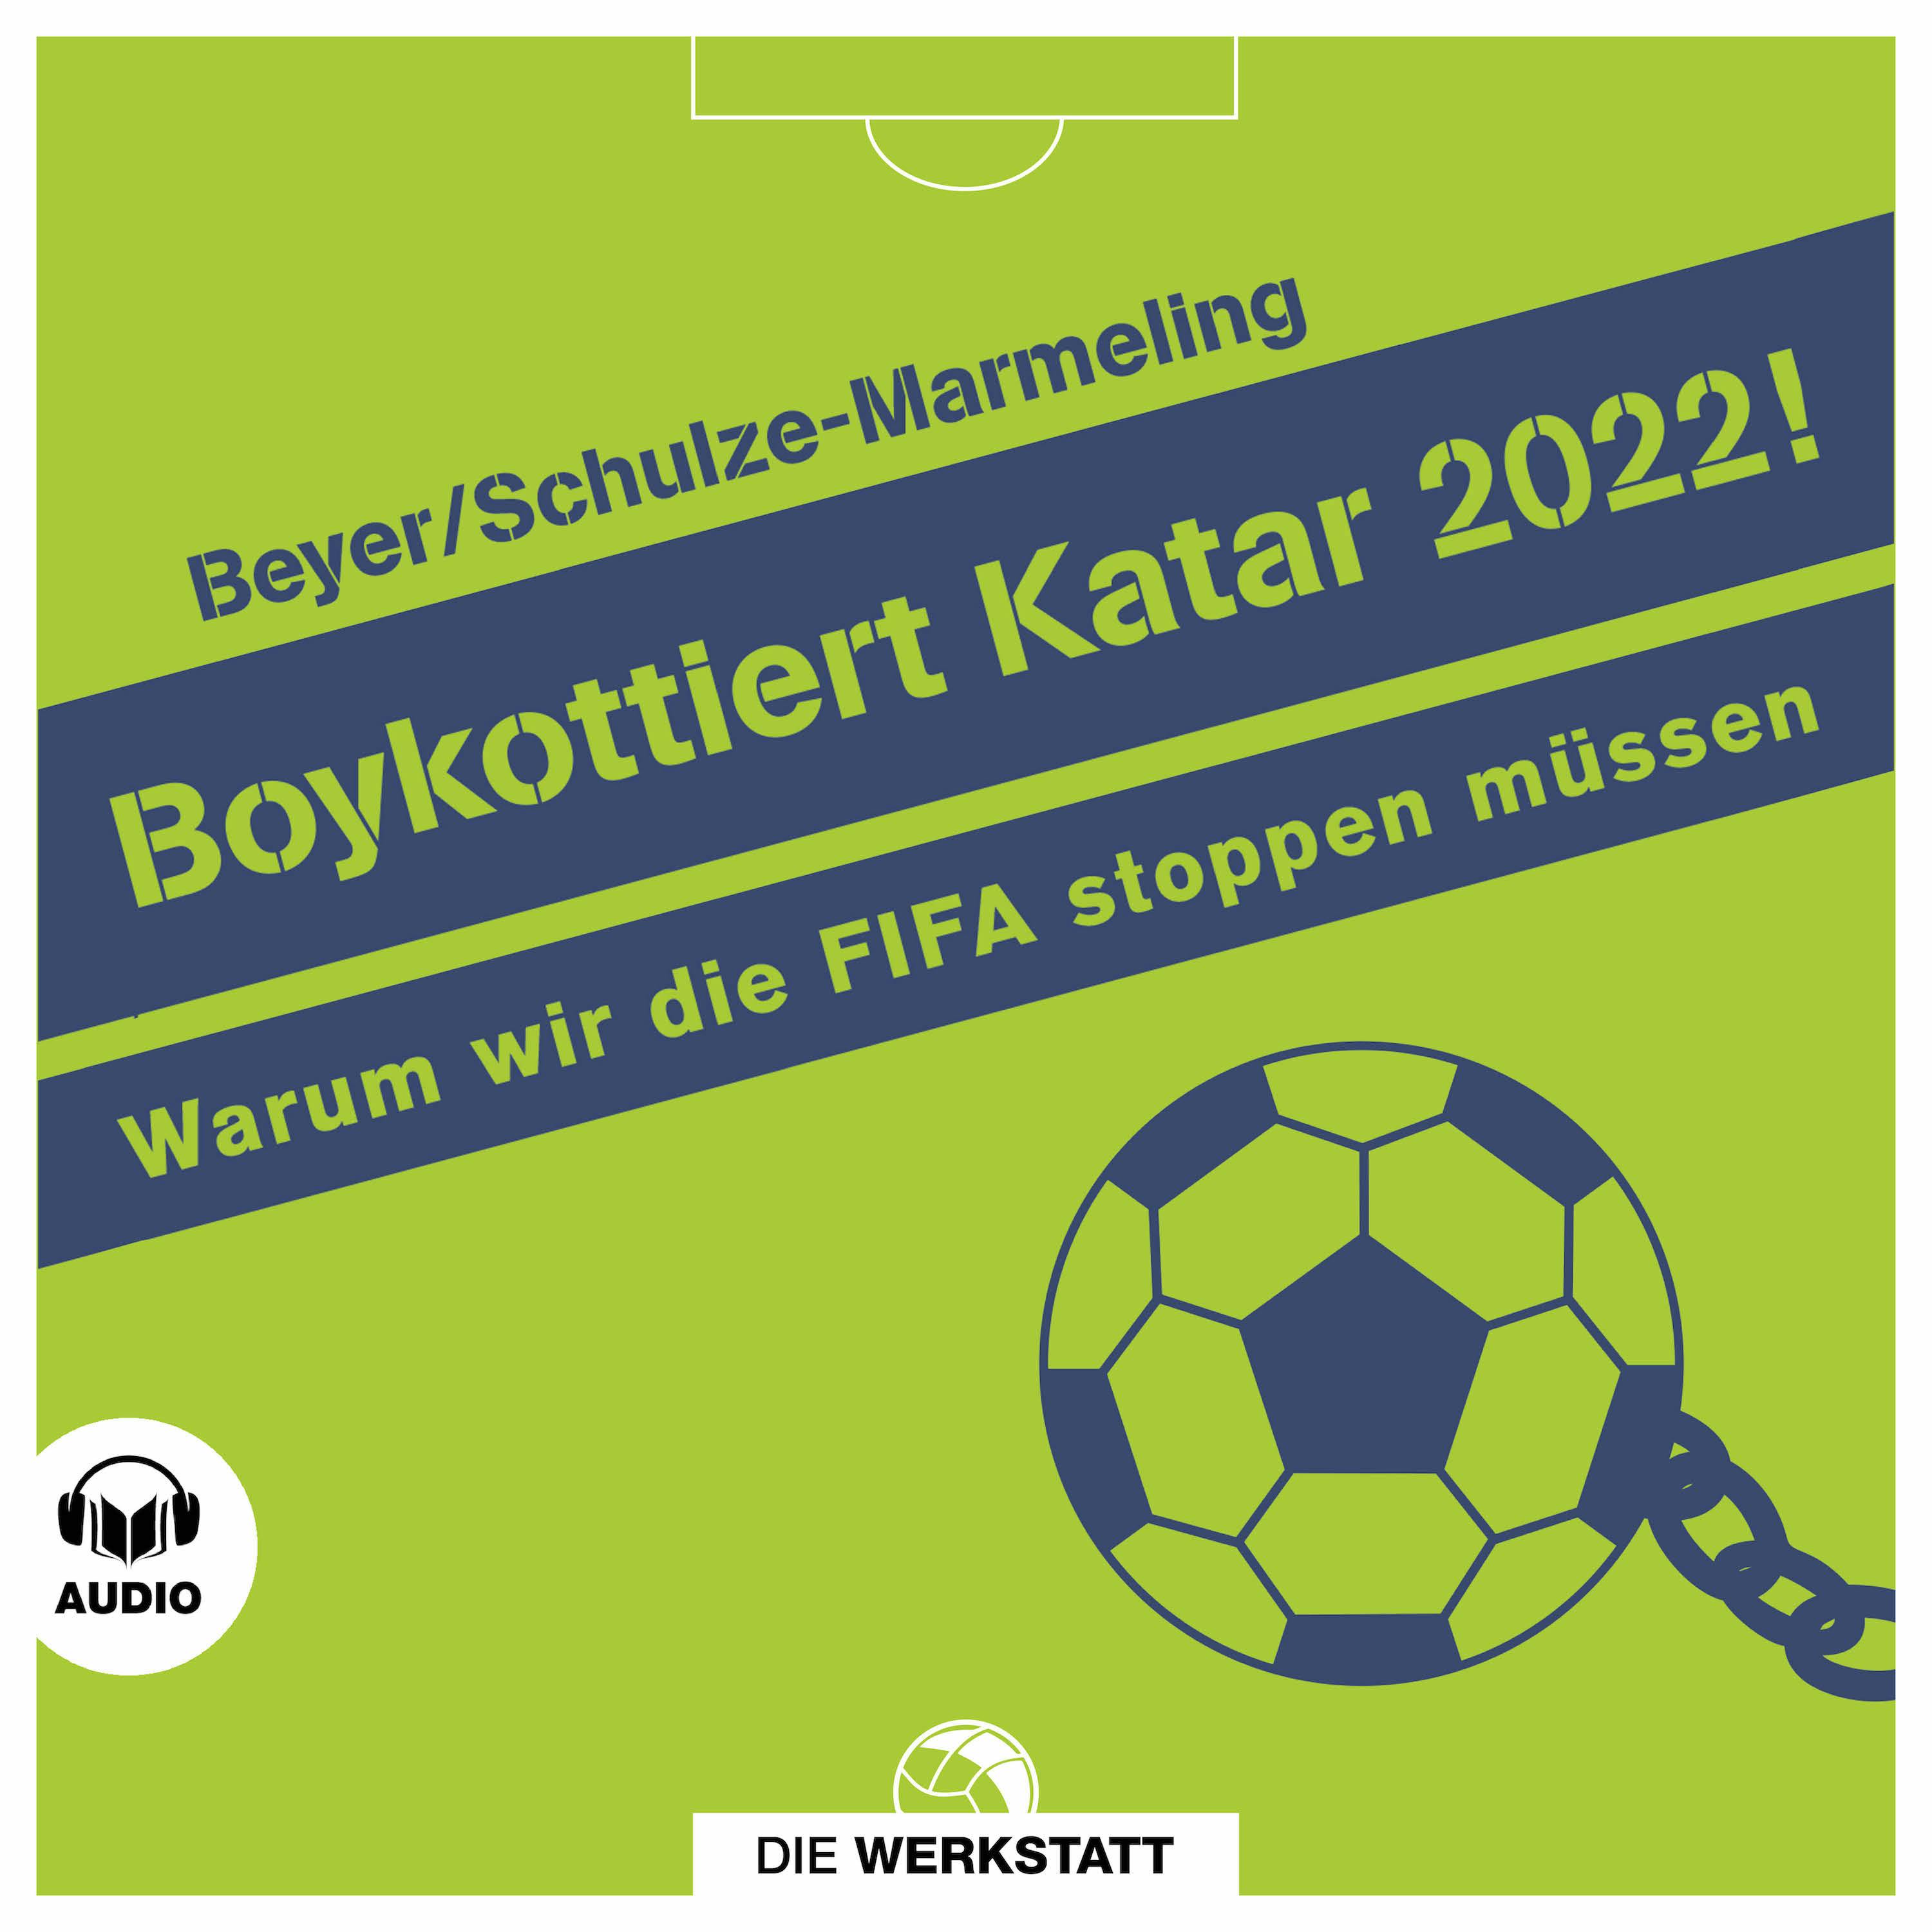 Boykottiert Katar 2022!: Warum wir die FIFA stoppen müssen - Bernd-M. Beyer, Dietrich Schulze-Marmeling